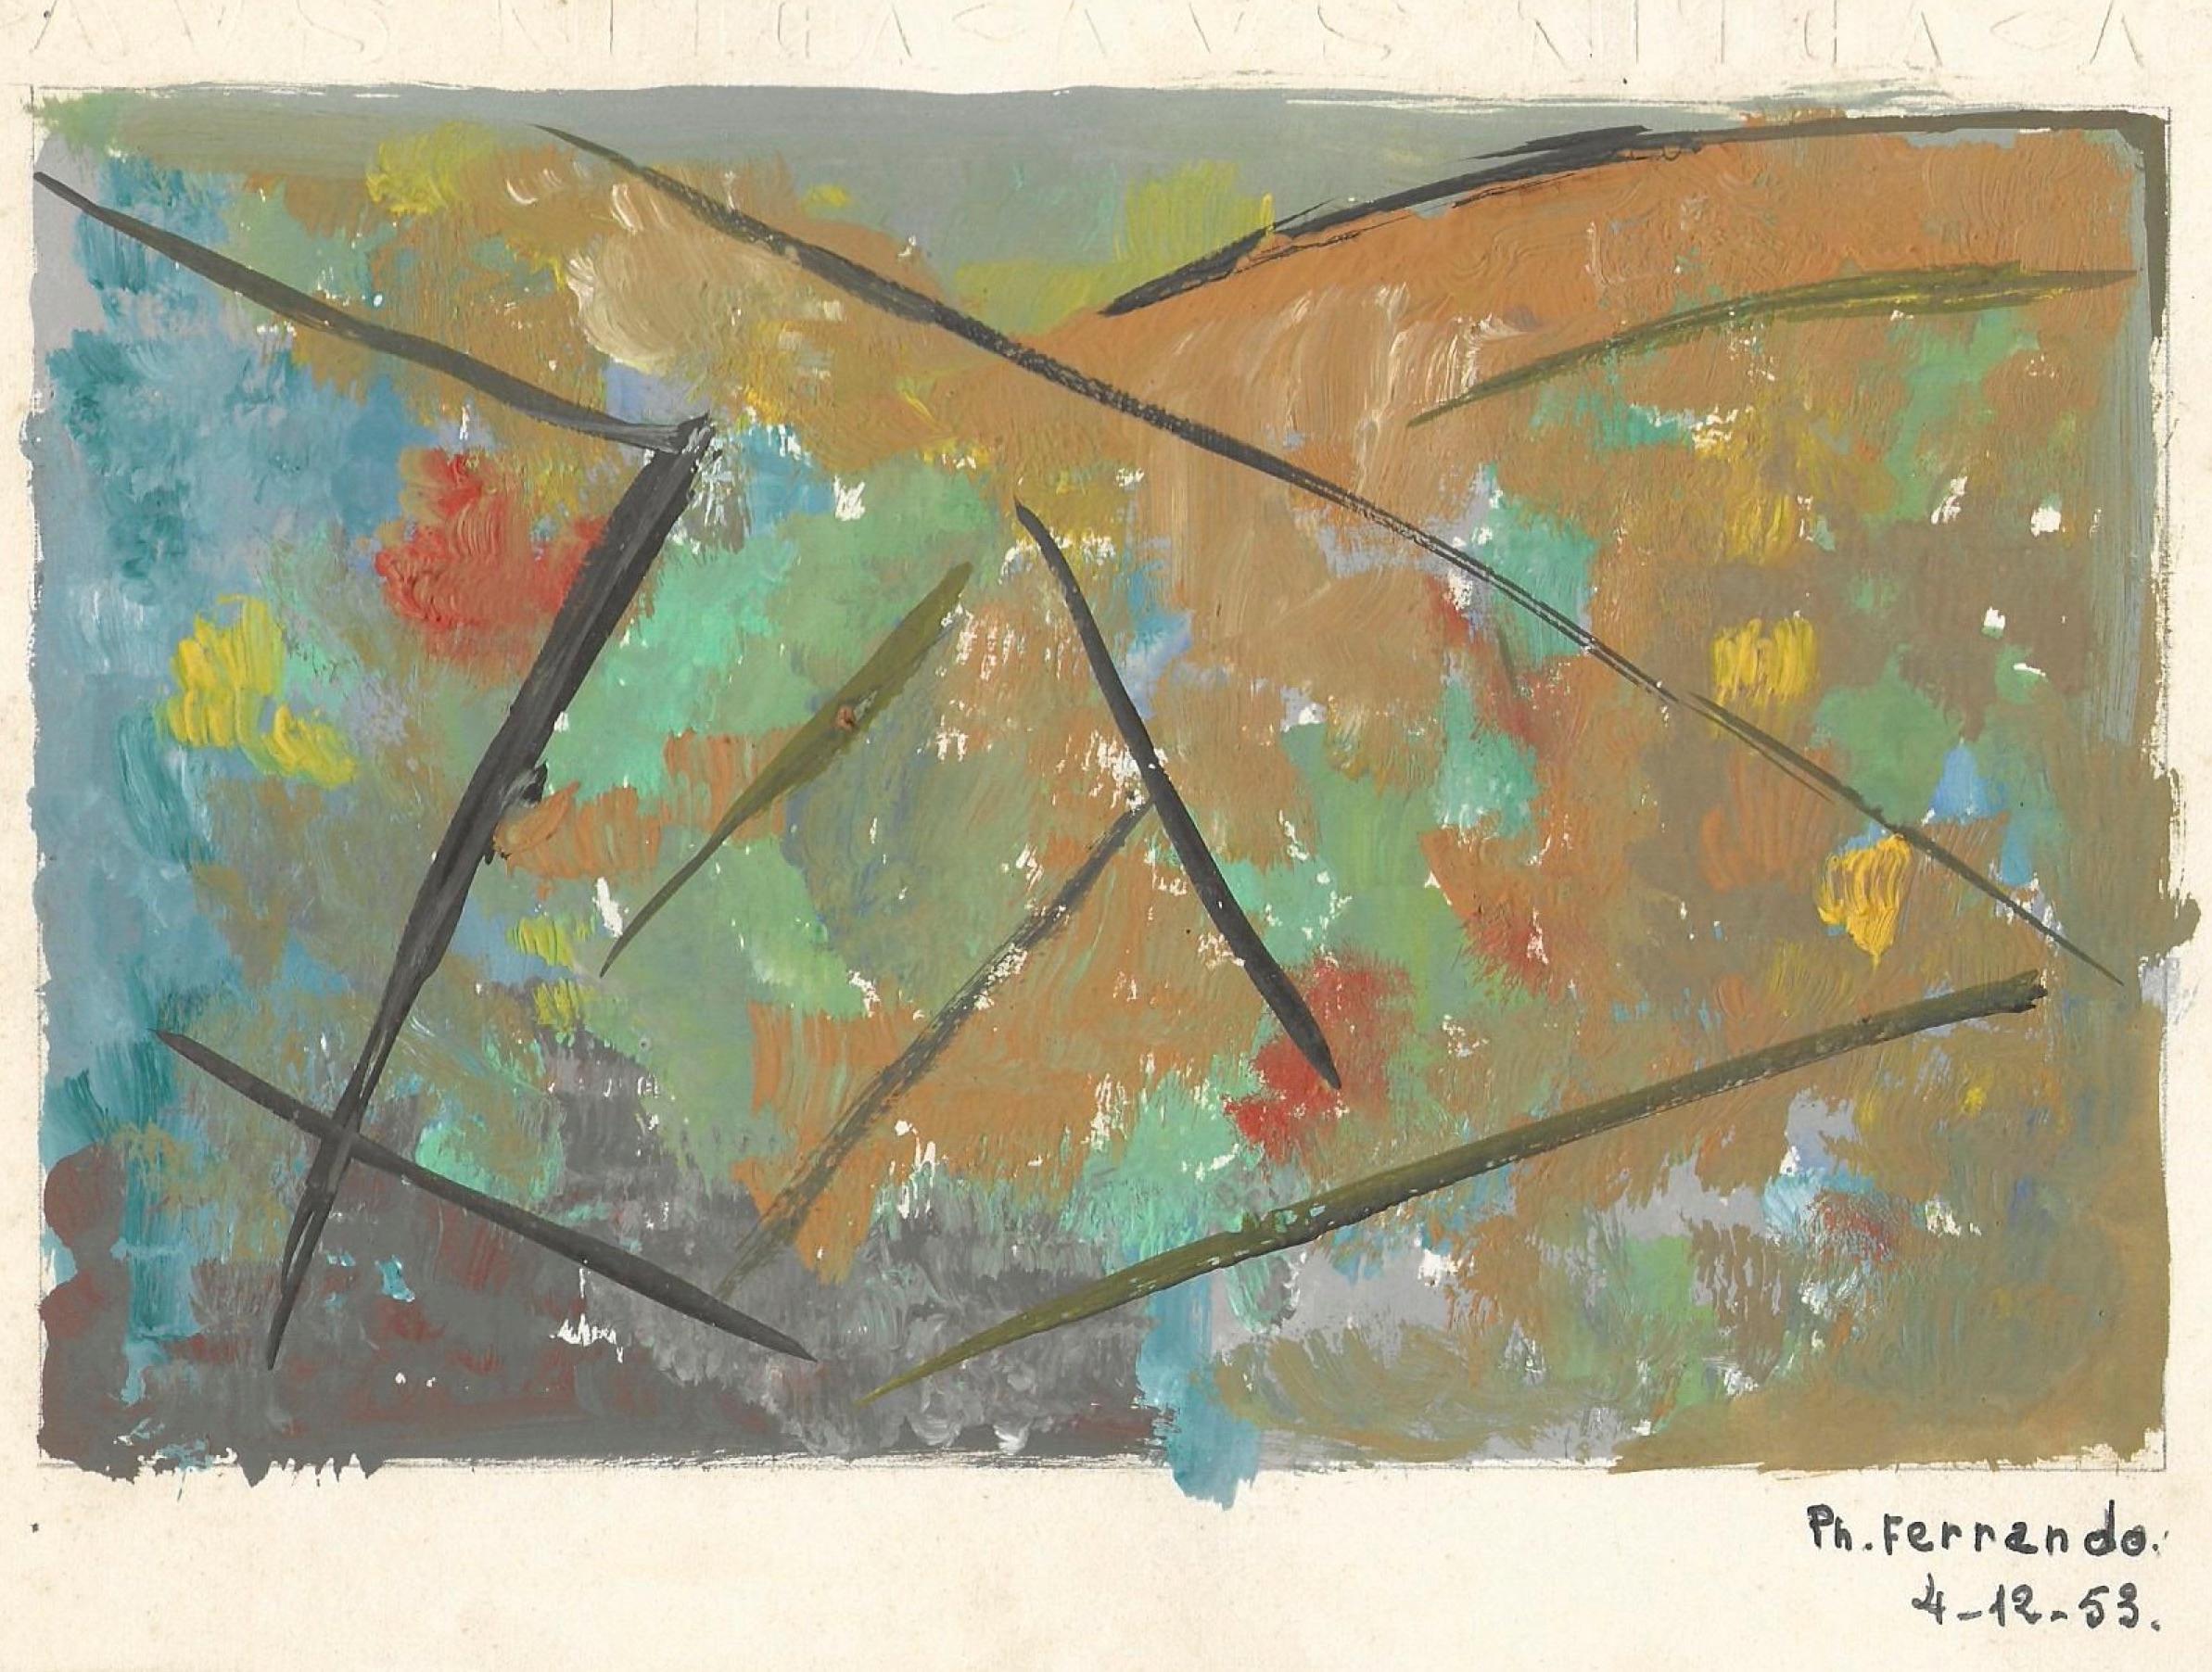 Abstract Painting Philippe Ferrando - Géométries - Tempera sur papier par Ph. Ferrando - 1953